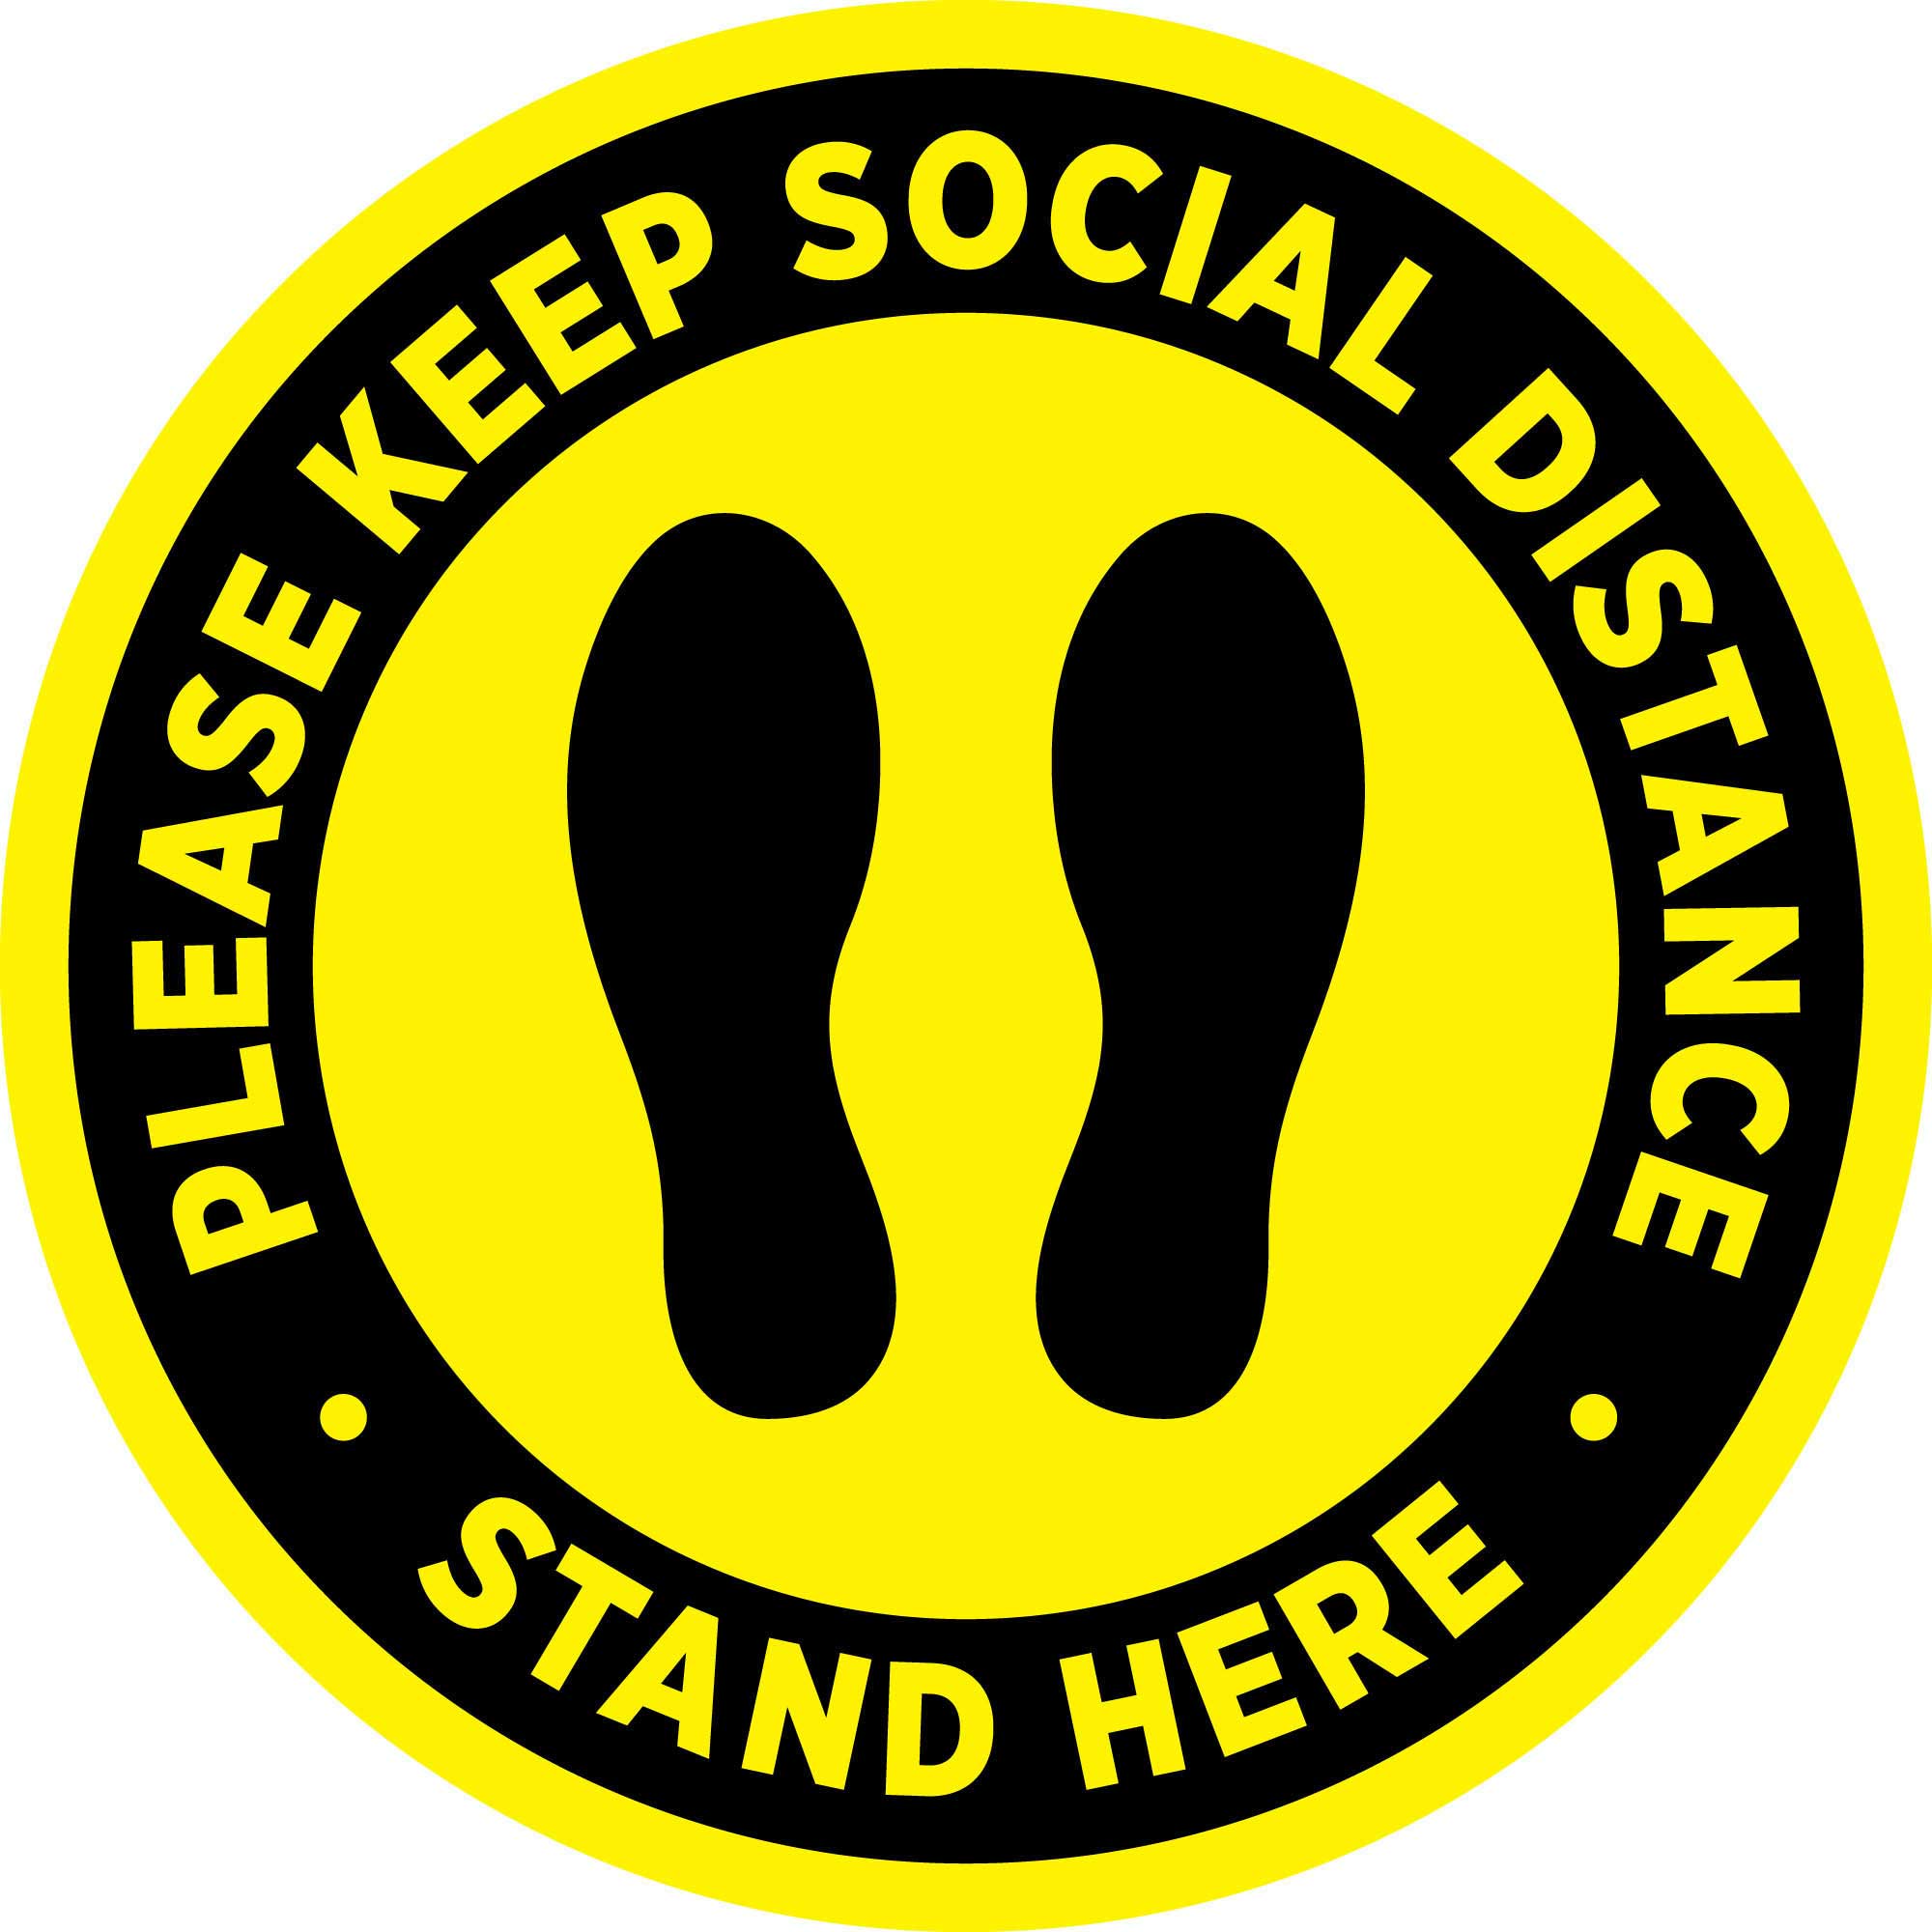 Internal Indoor Social Distancing Distance Floor Sticker stand herex 5 